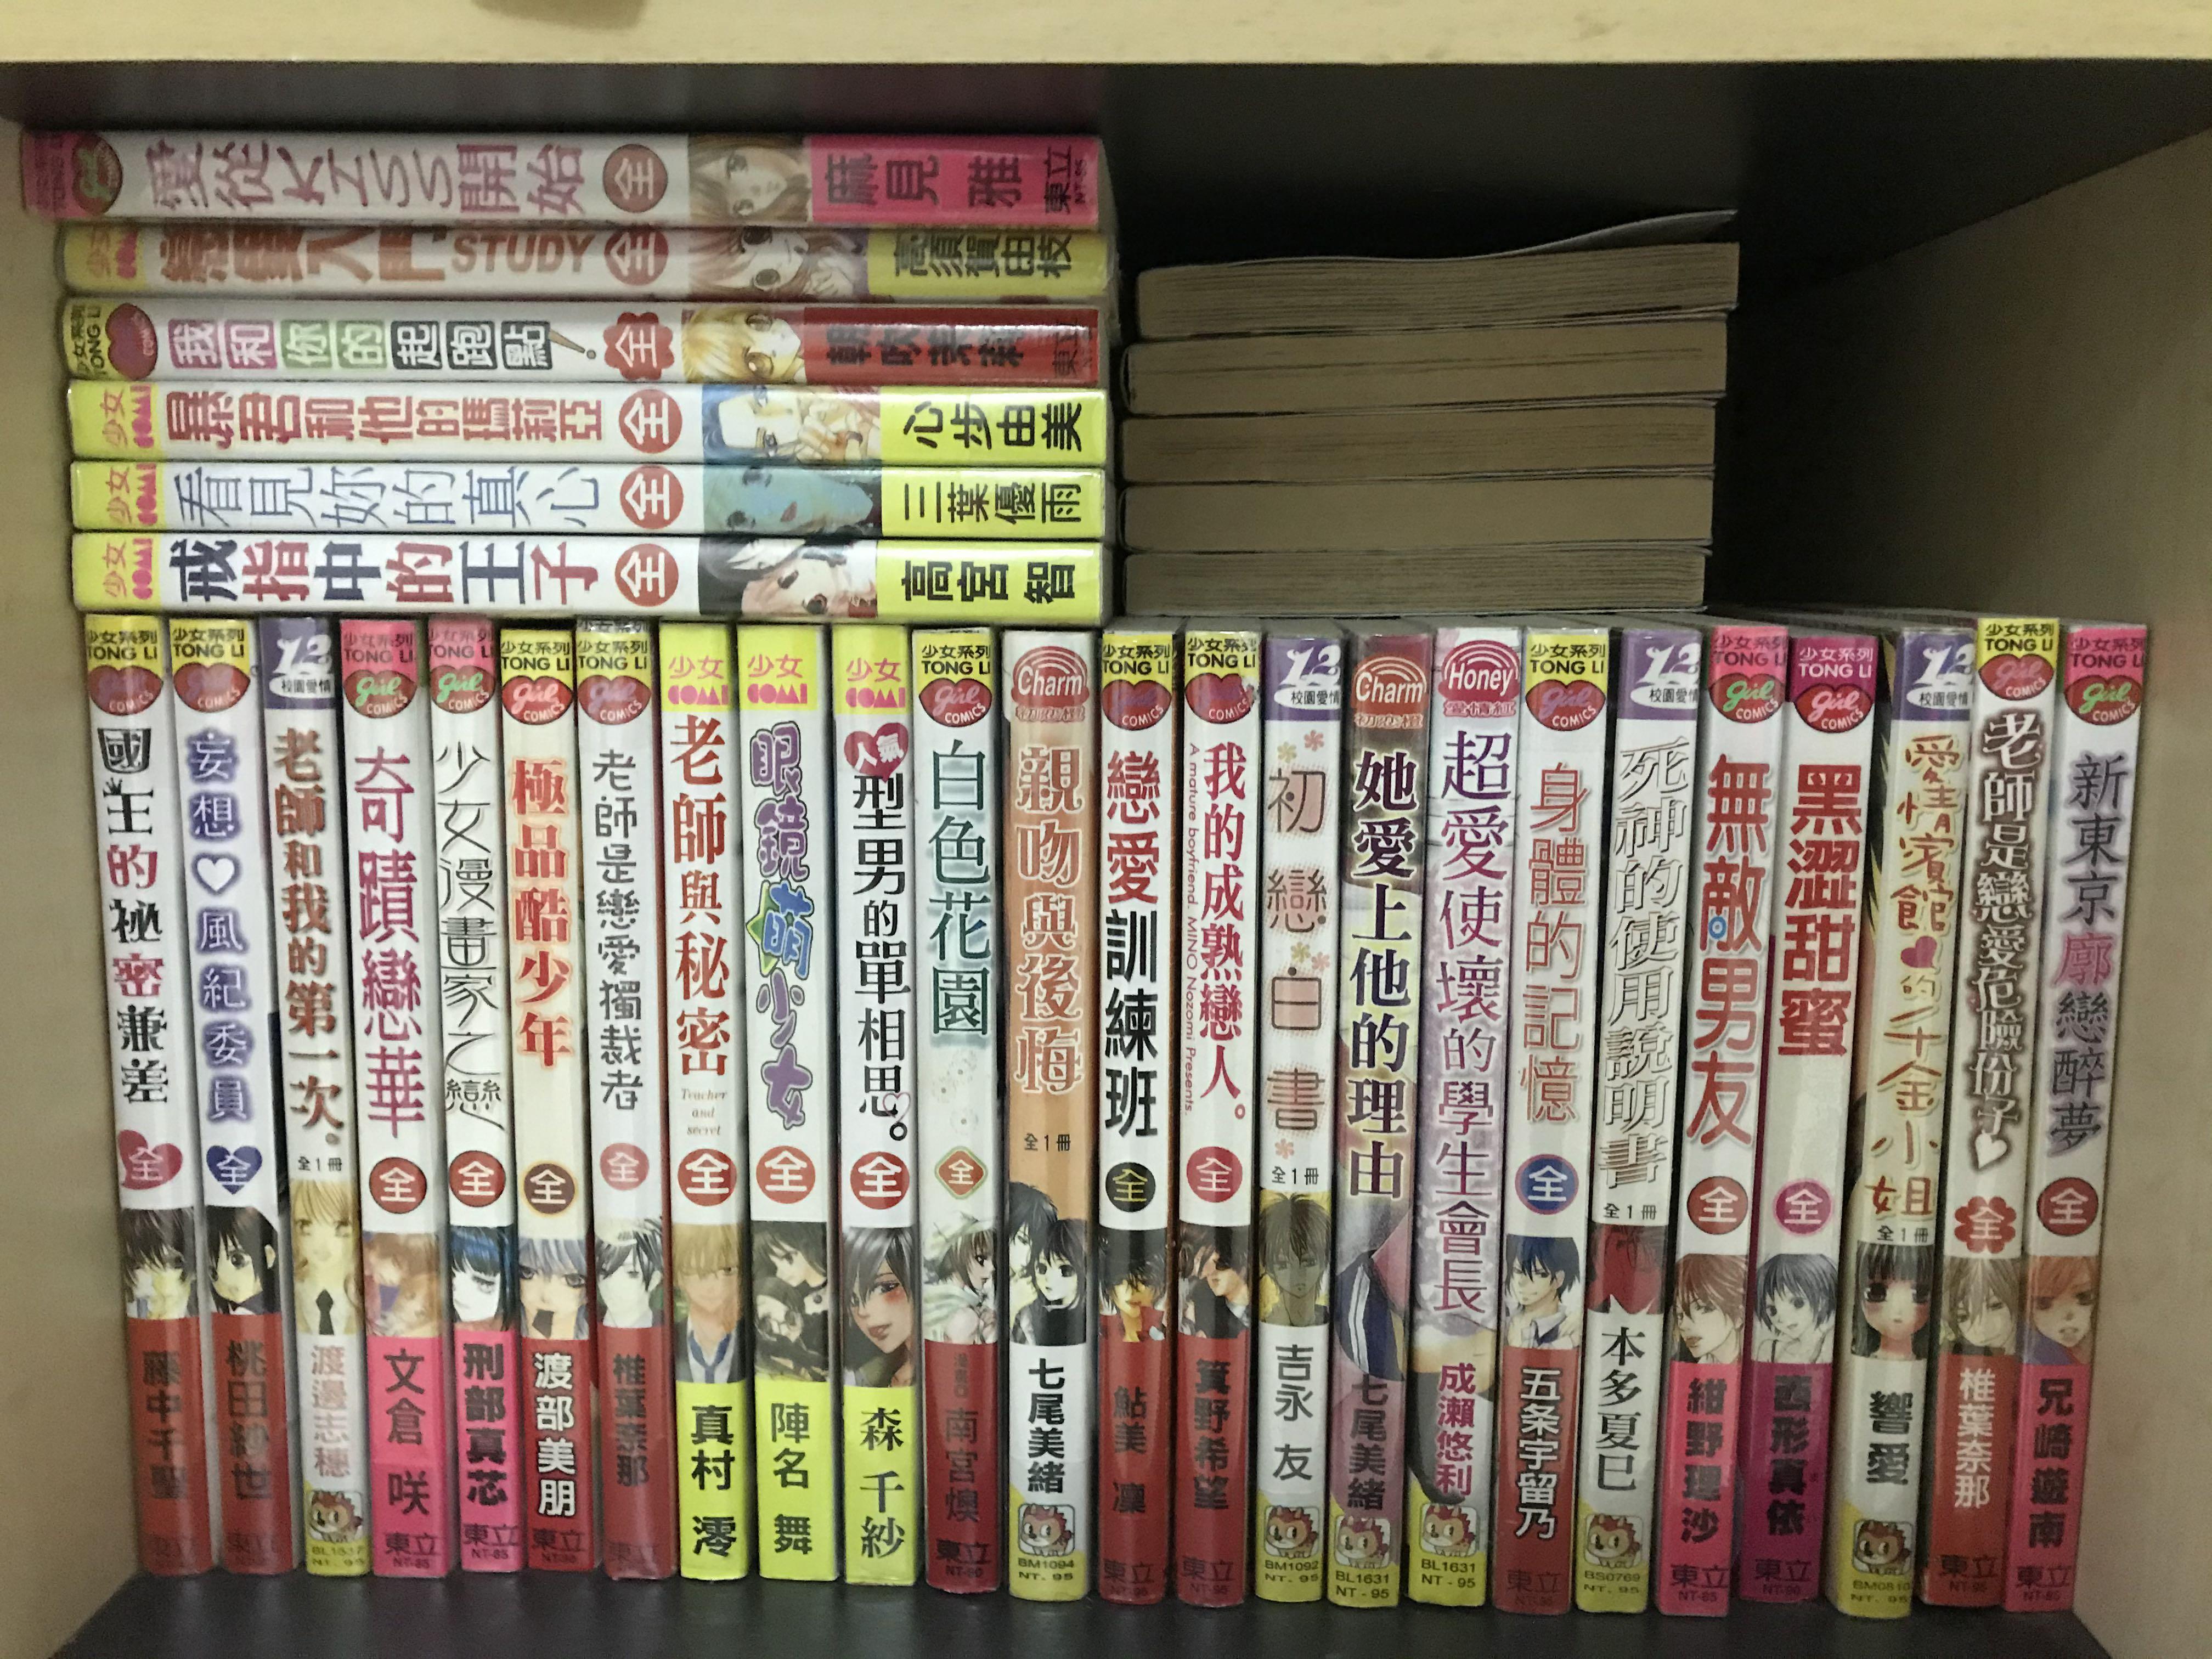 少女漫画comic Manga Collection A Books Stationery Comics Manga On Carousell